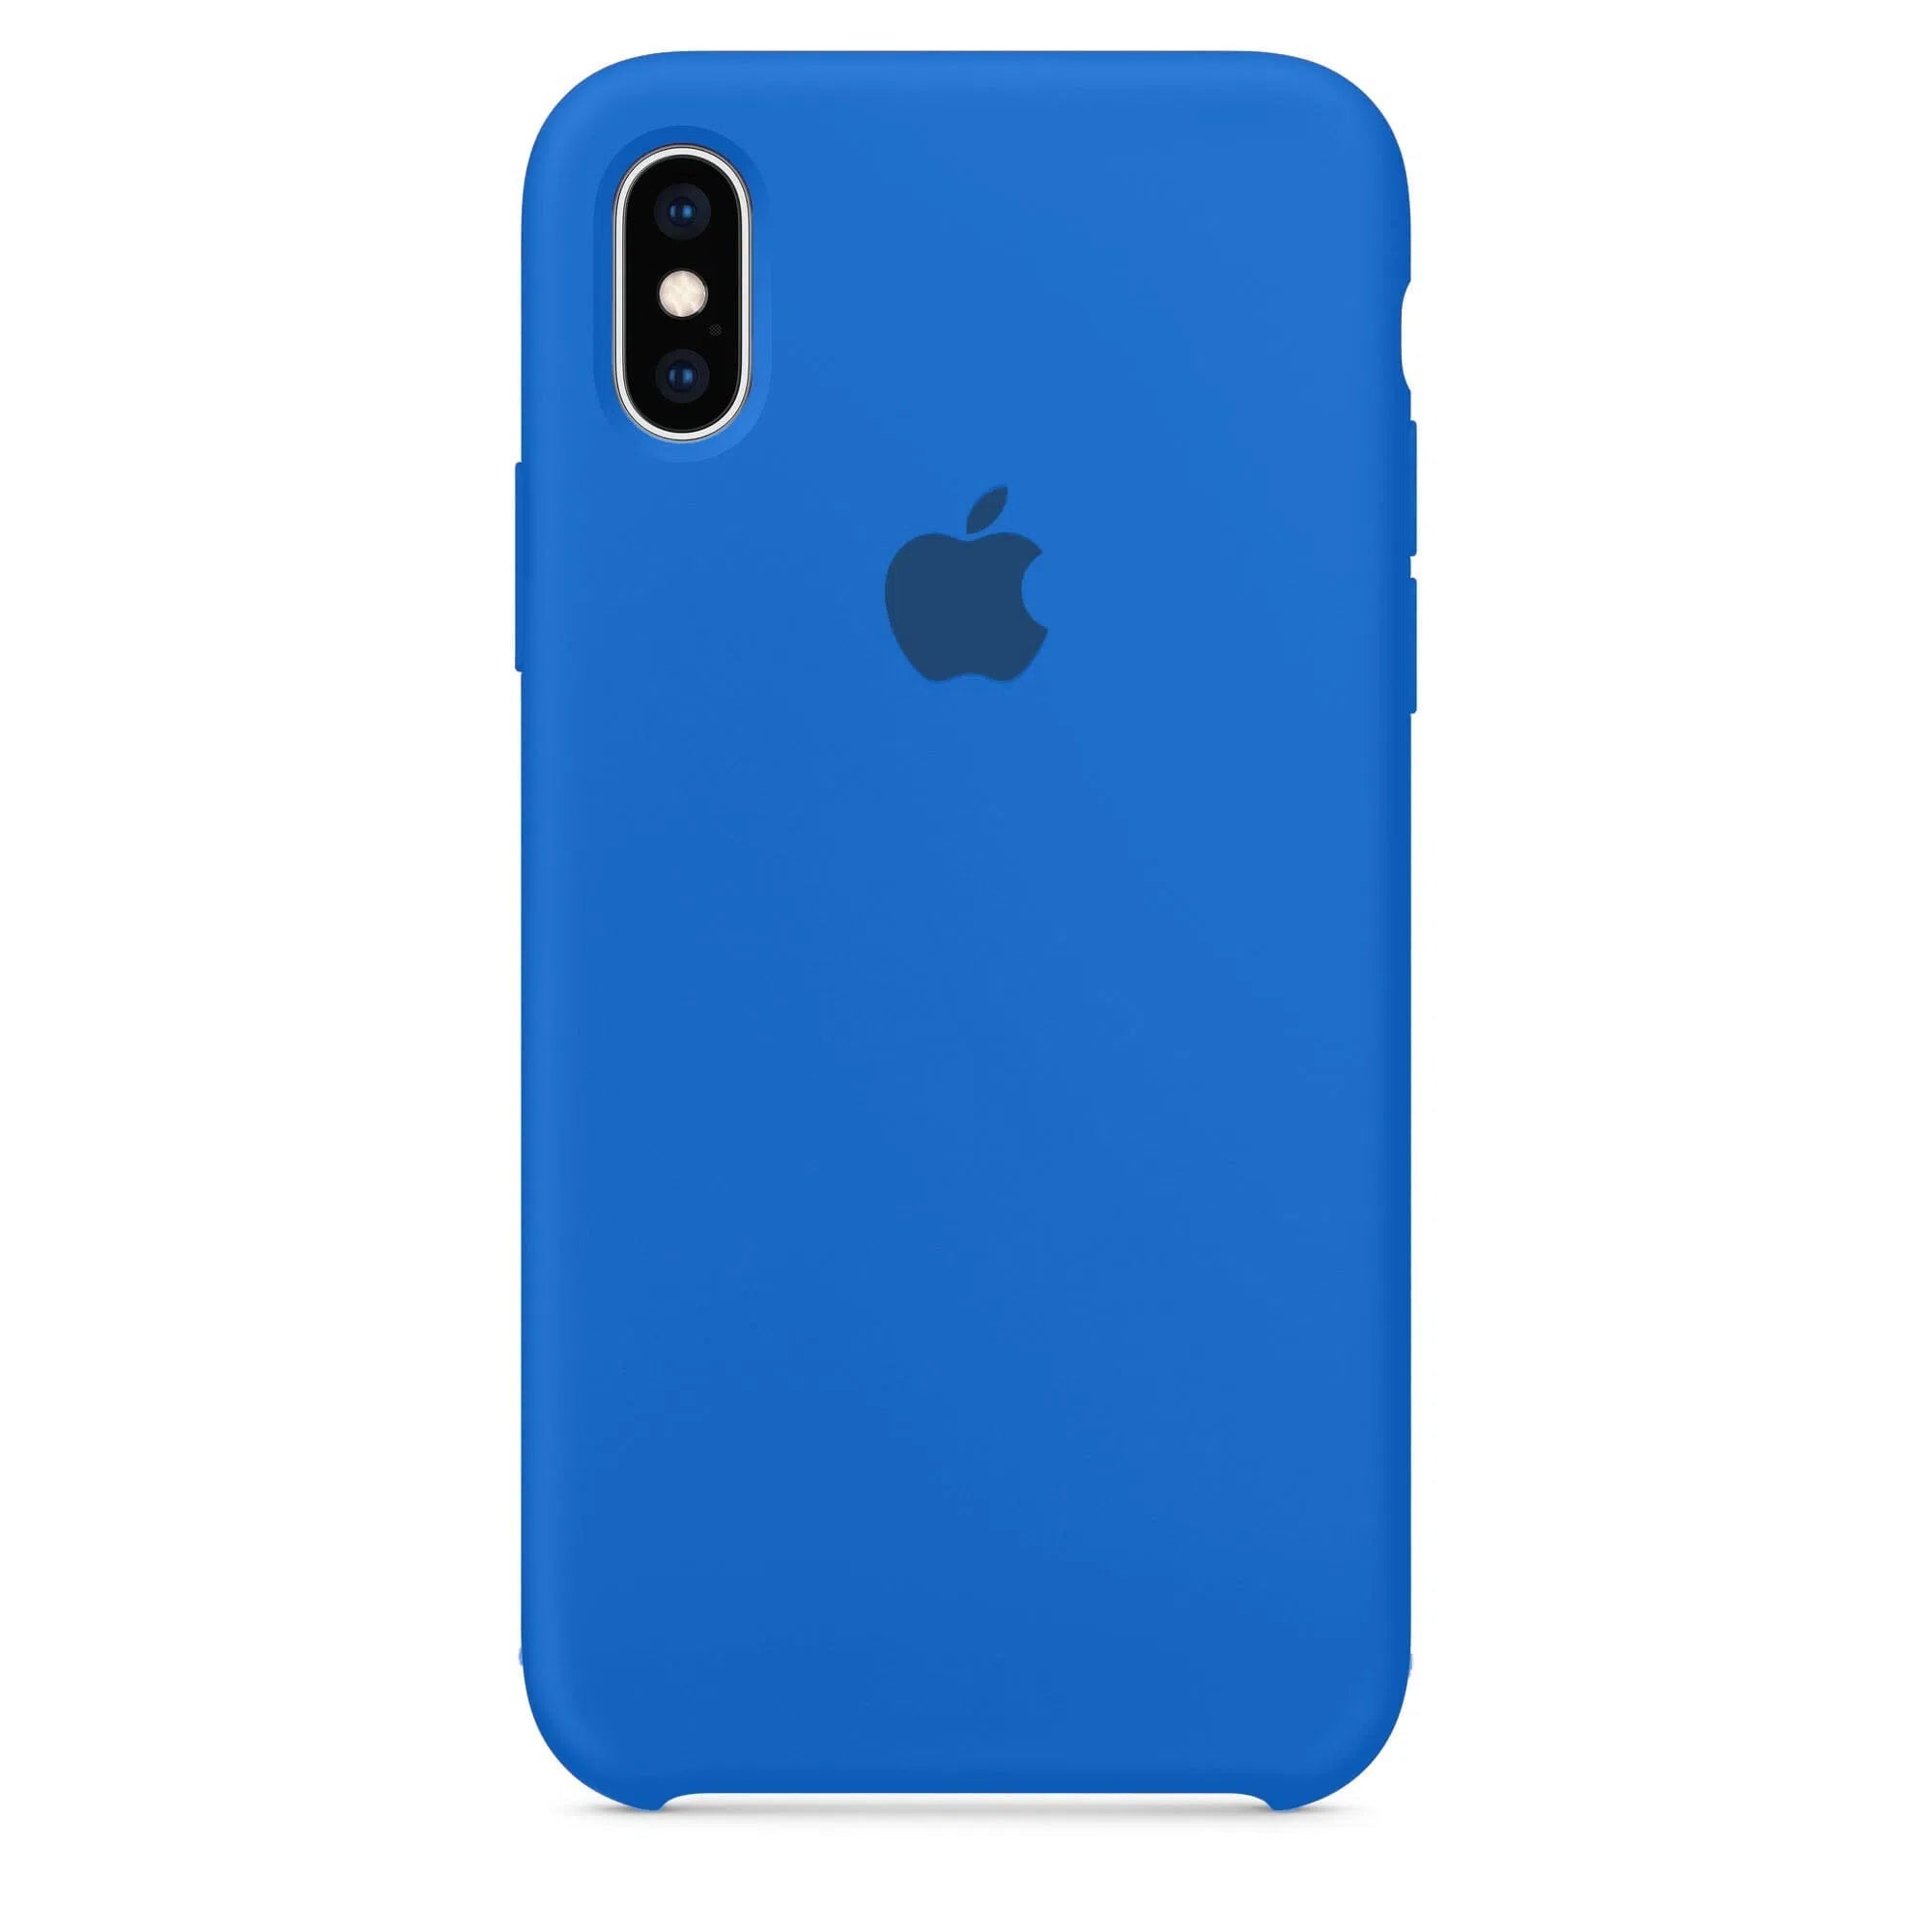 Husa iPhone Silicone Case Blue Cobalt (Albastru) Anca's Store X/Xs 